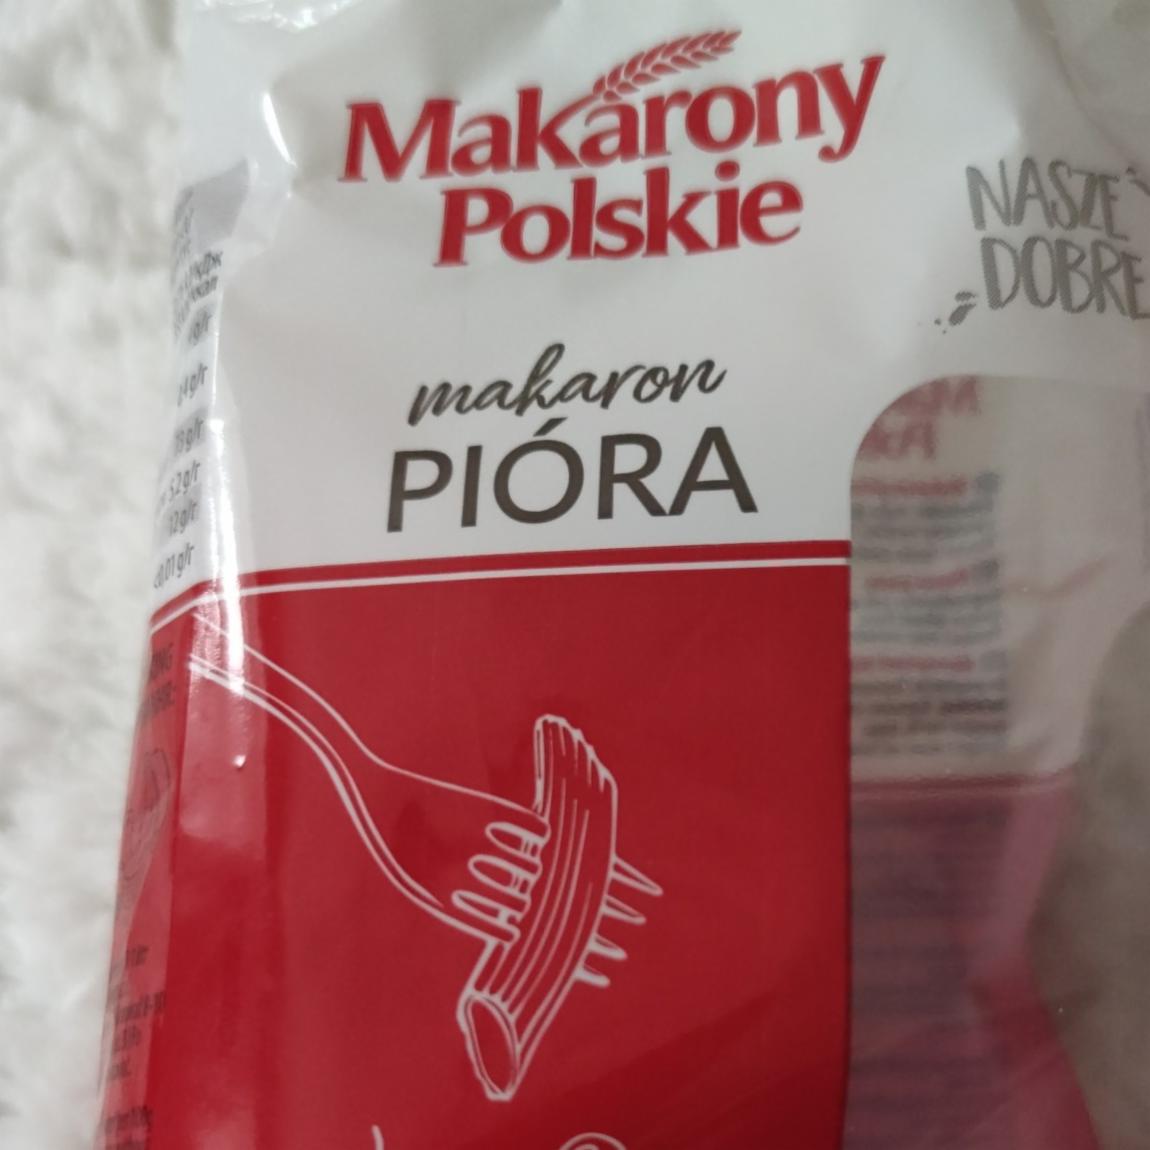 Zdjęcia - Makarony Polskie Makaron pióra 400 g